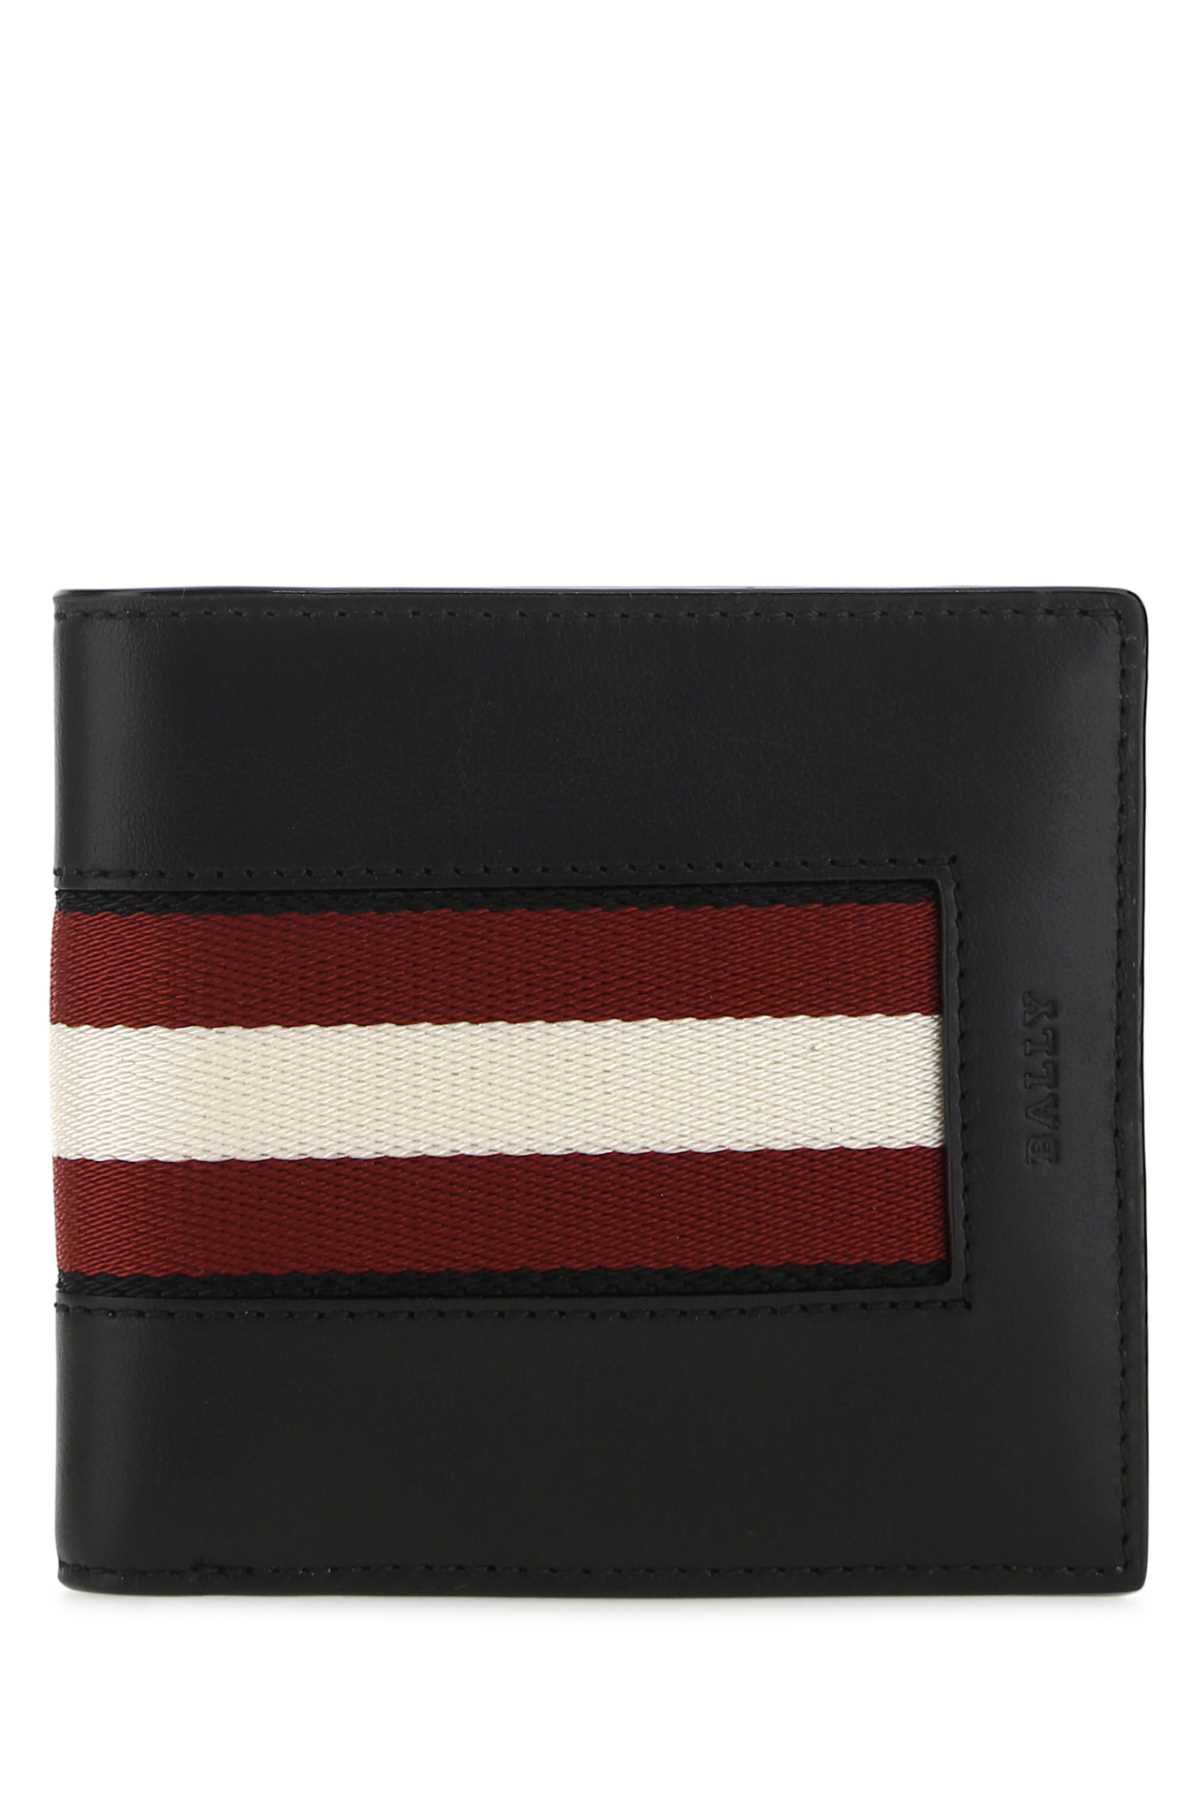 Bally Black Leather Brasai Wallet